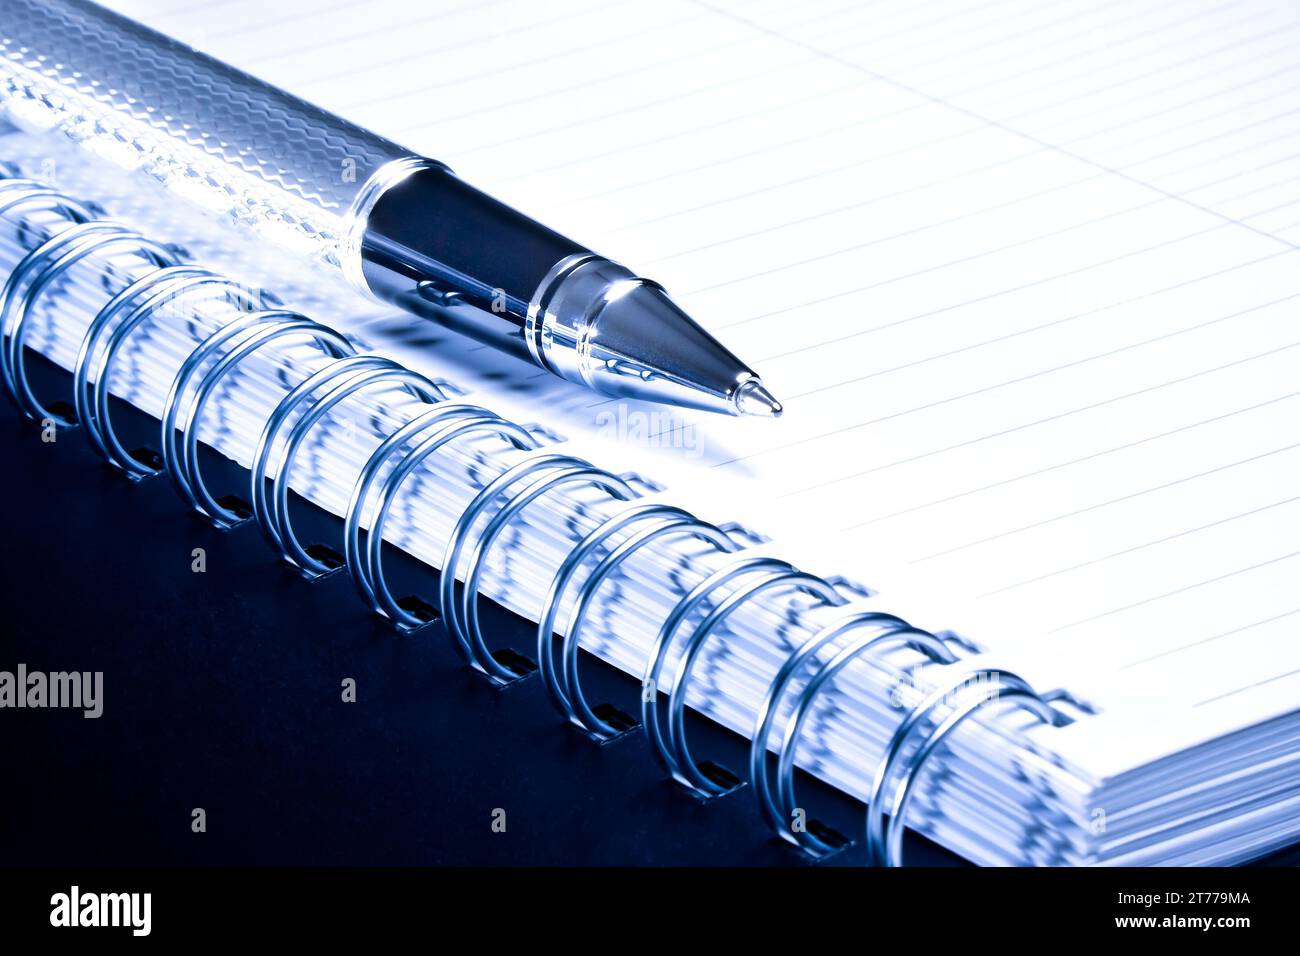 dettaglio di un notebook e di una penna da lavoro nella composizione in blu chiaro Foto Stock